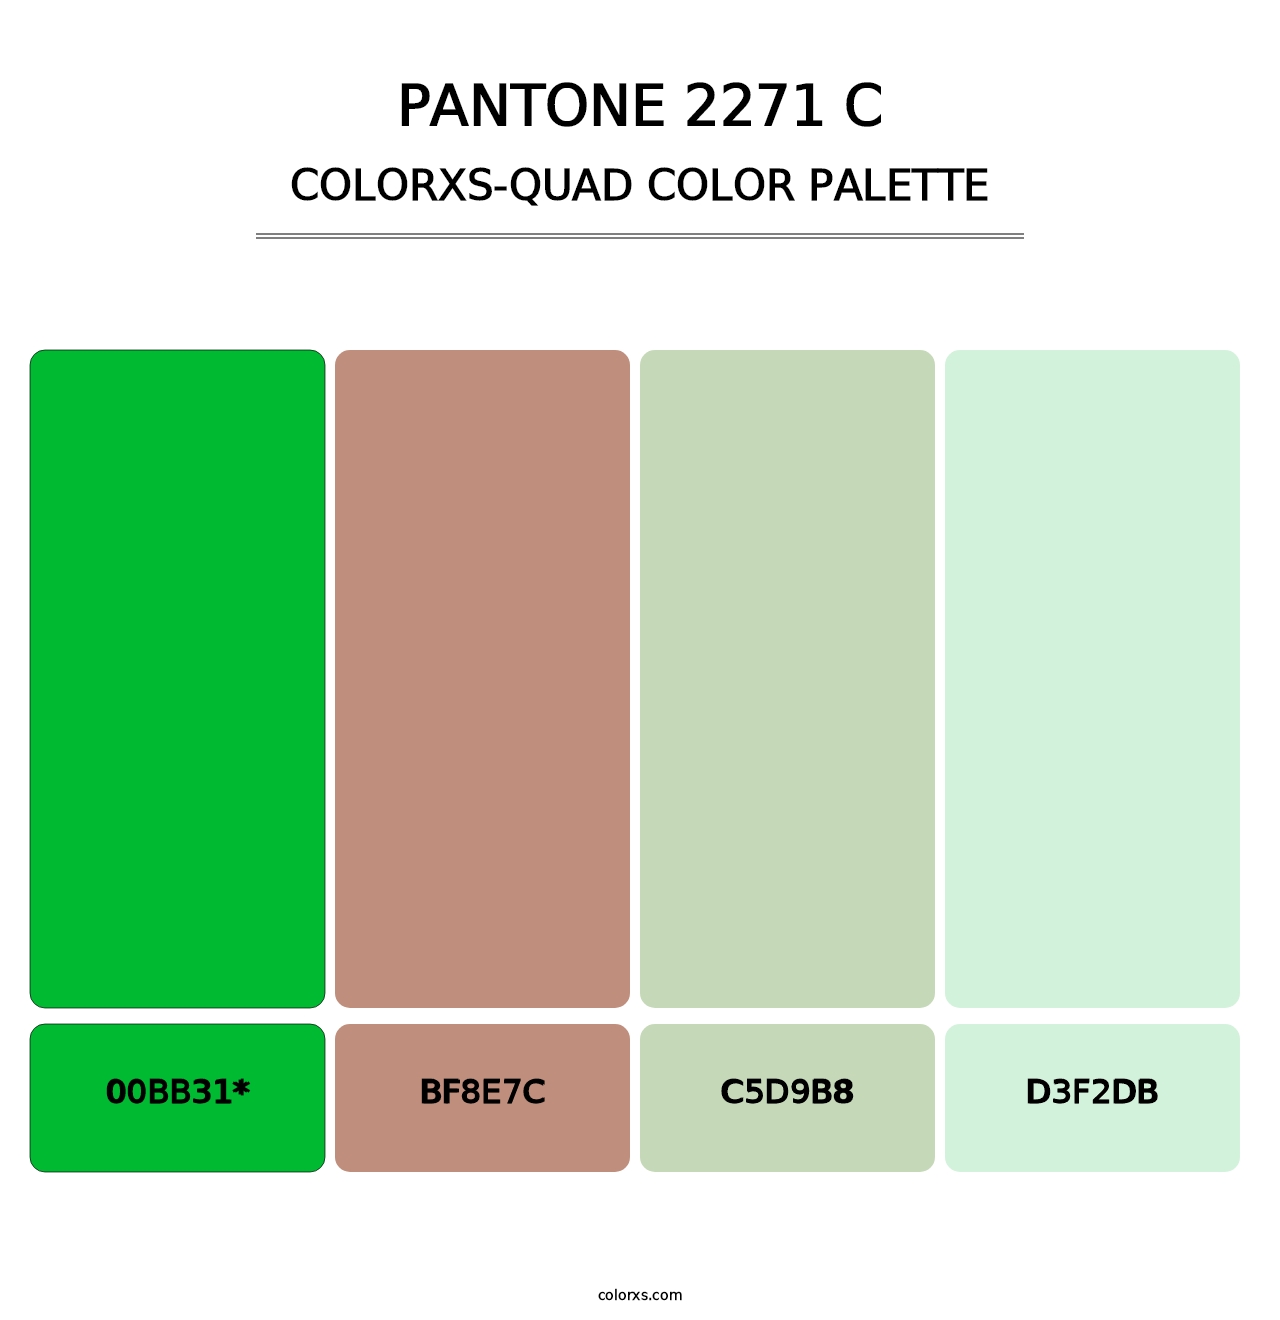 PANTONE 2271 C - Colorxs Quad Palette